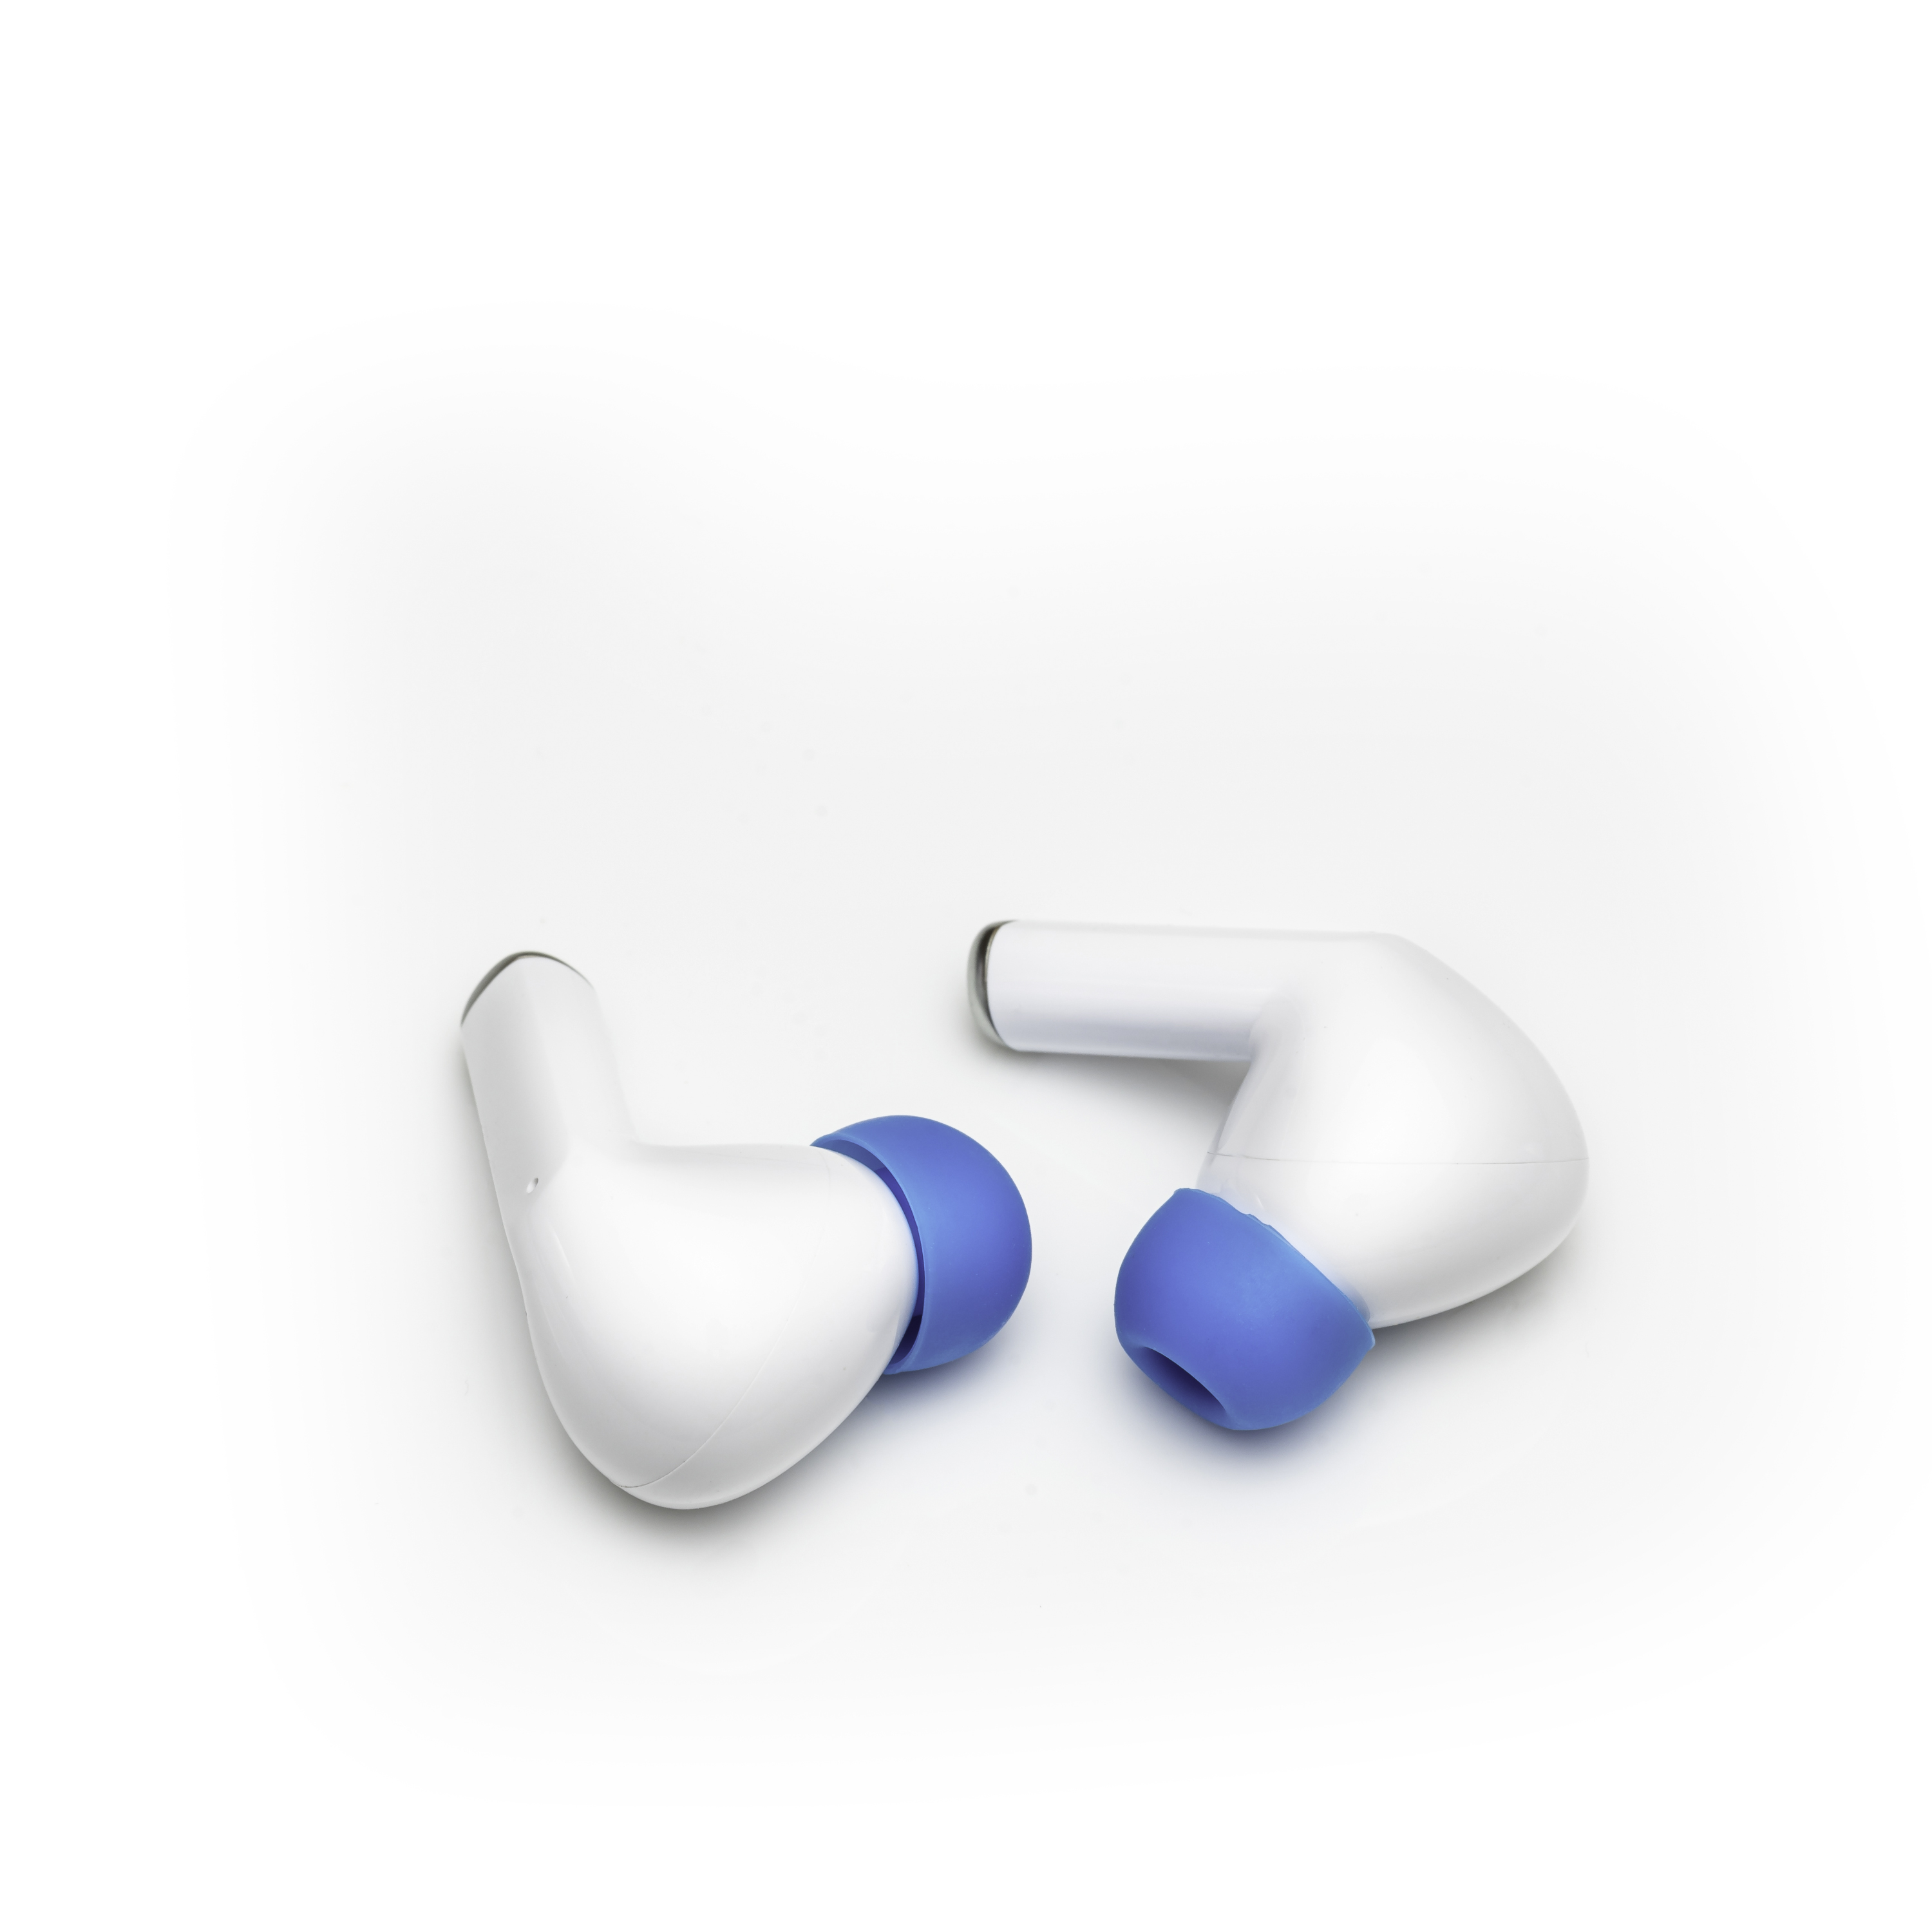 BLAUPUNKT TWS Bluetooth 20 In-ear WH, Wireless Weiss True In-Ear-Kopfhörer